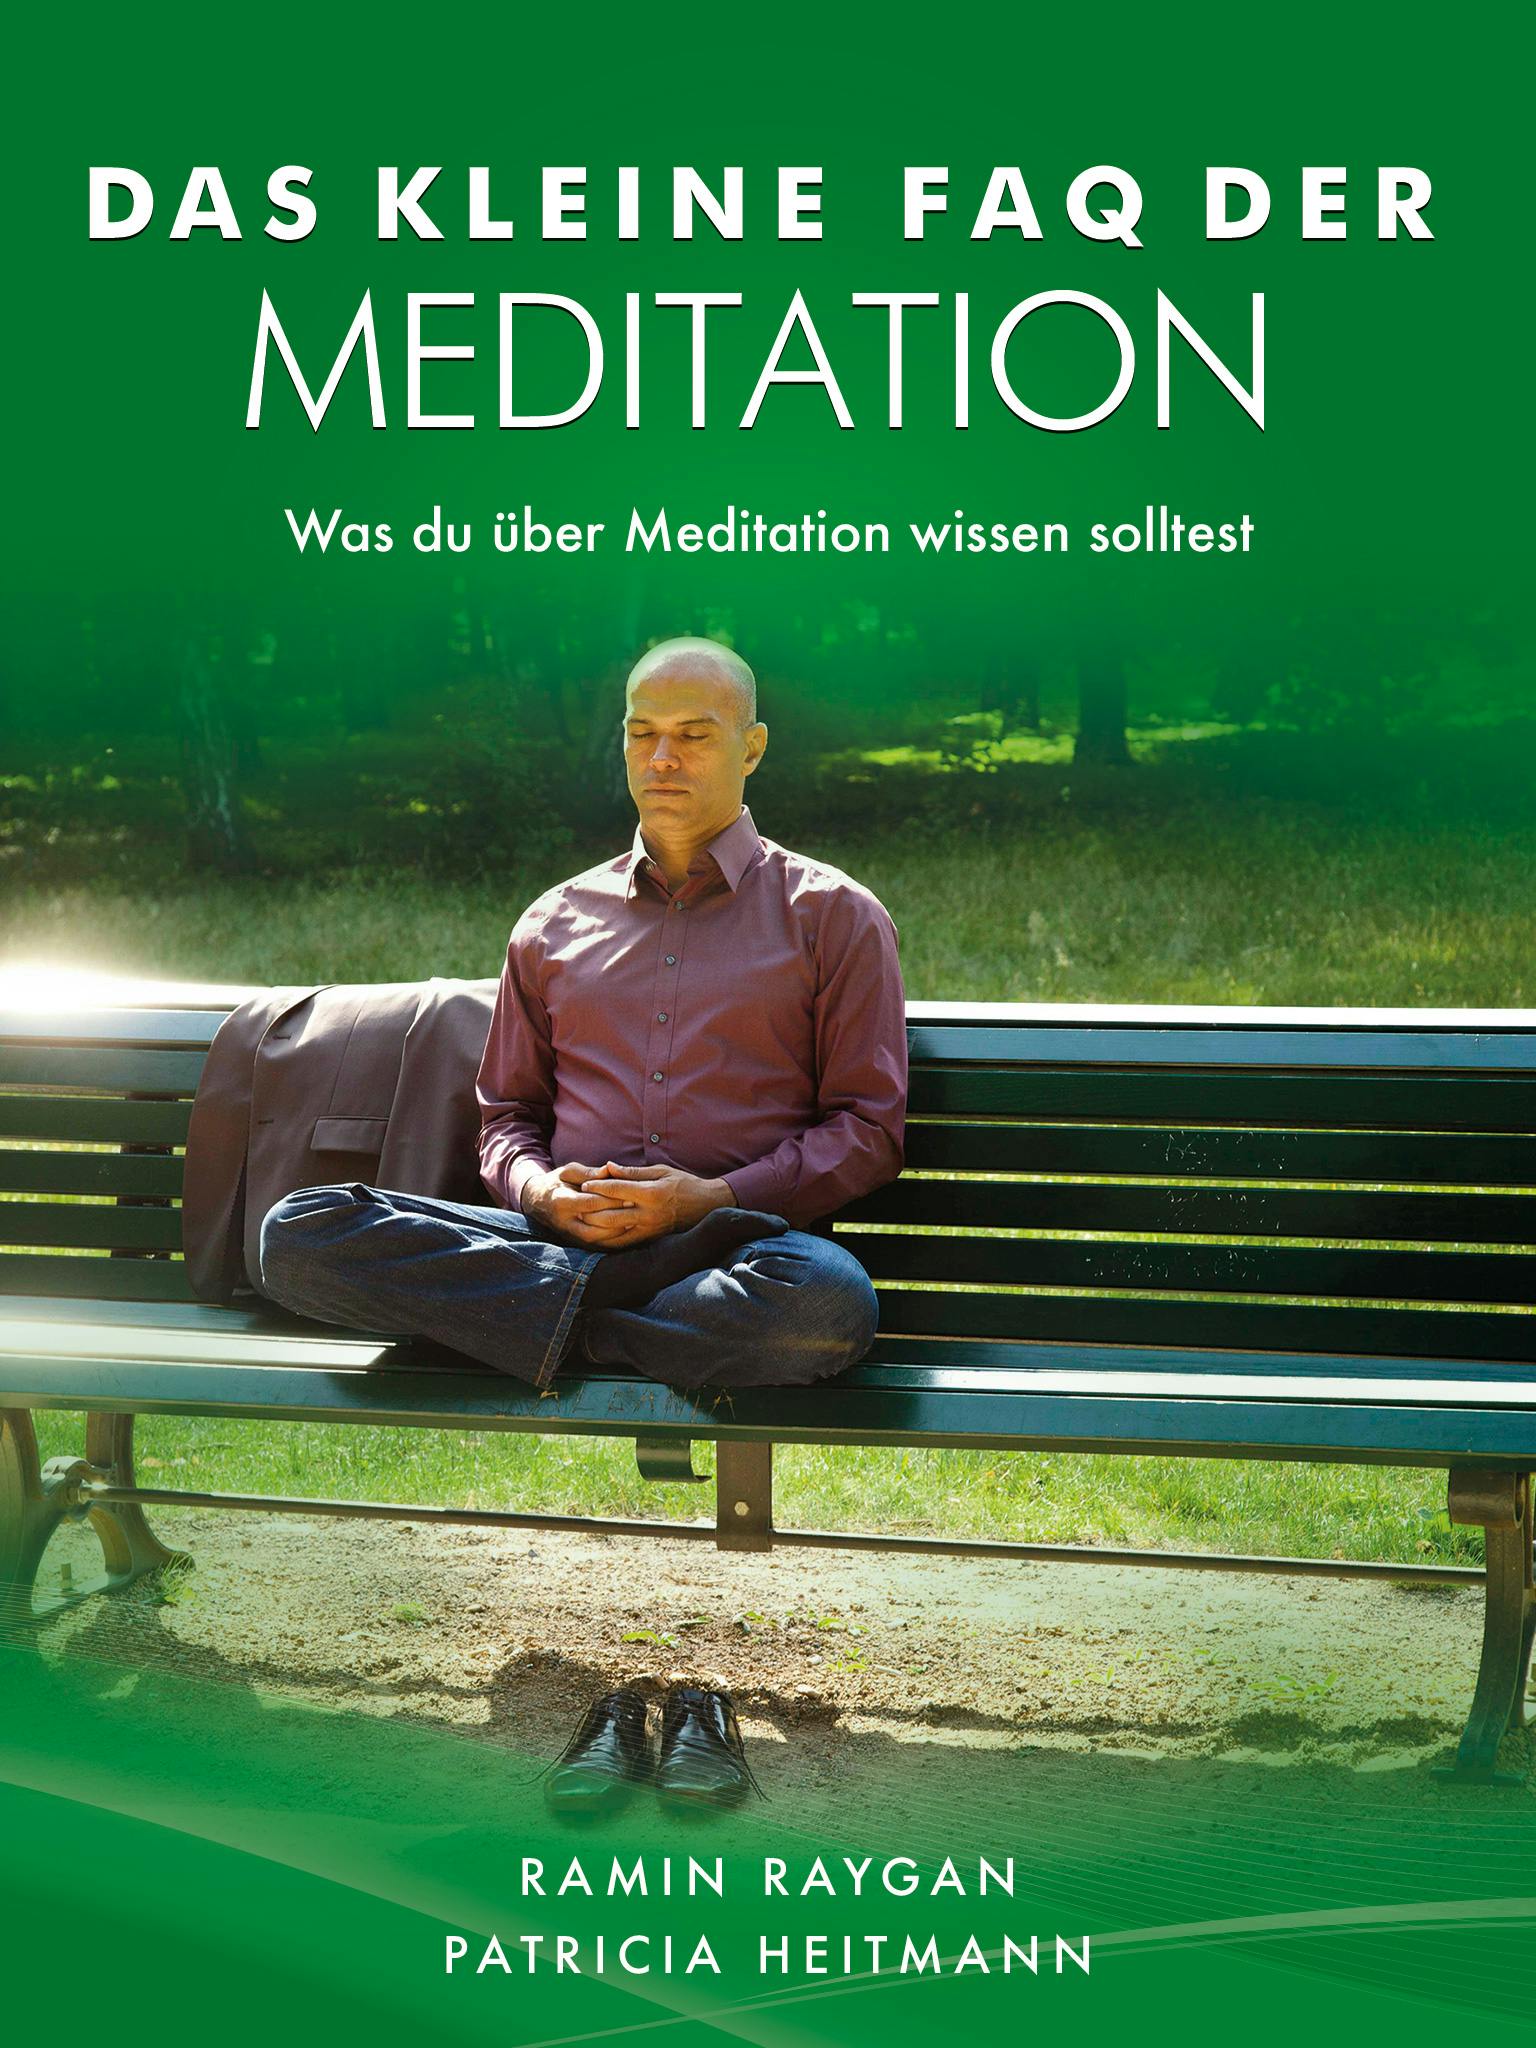 Das kleine FAQ der Meditation - Ramin Raygan, Patricia Heitmann